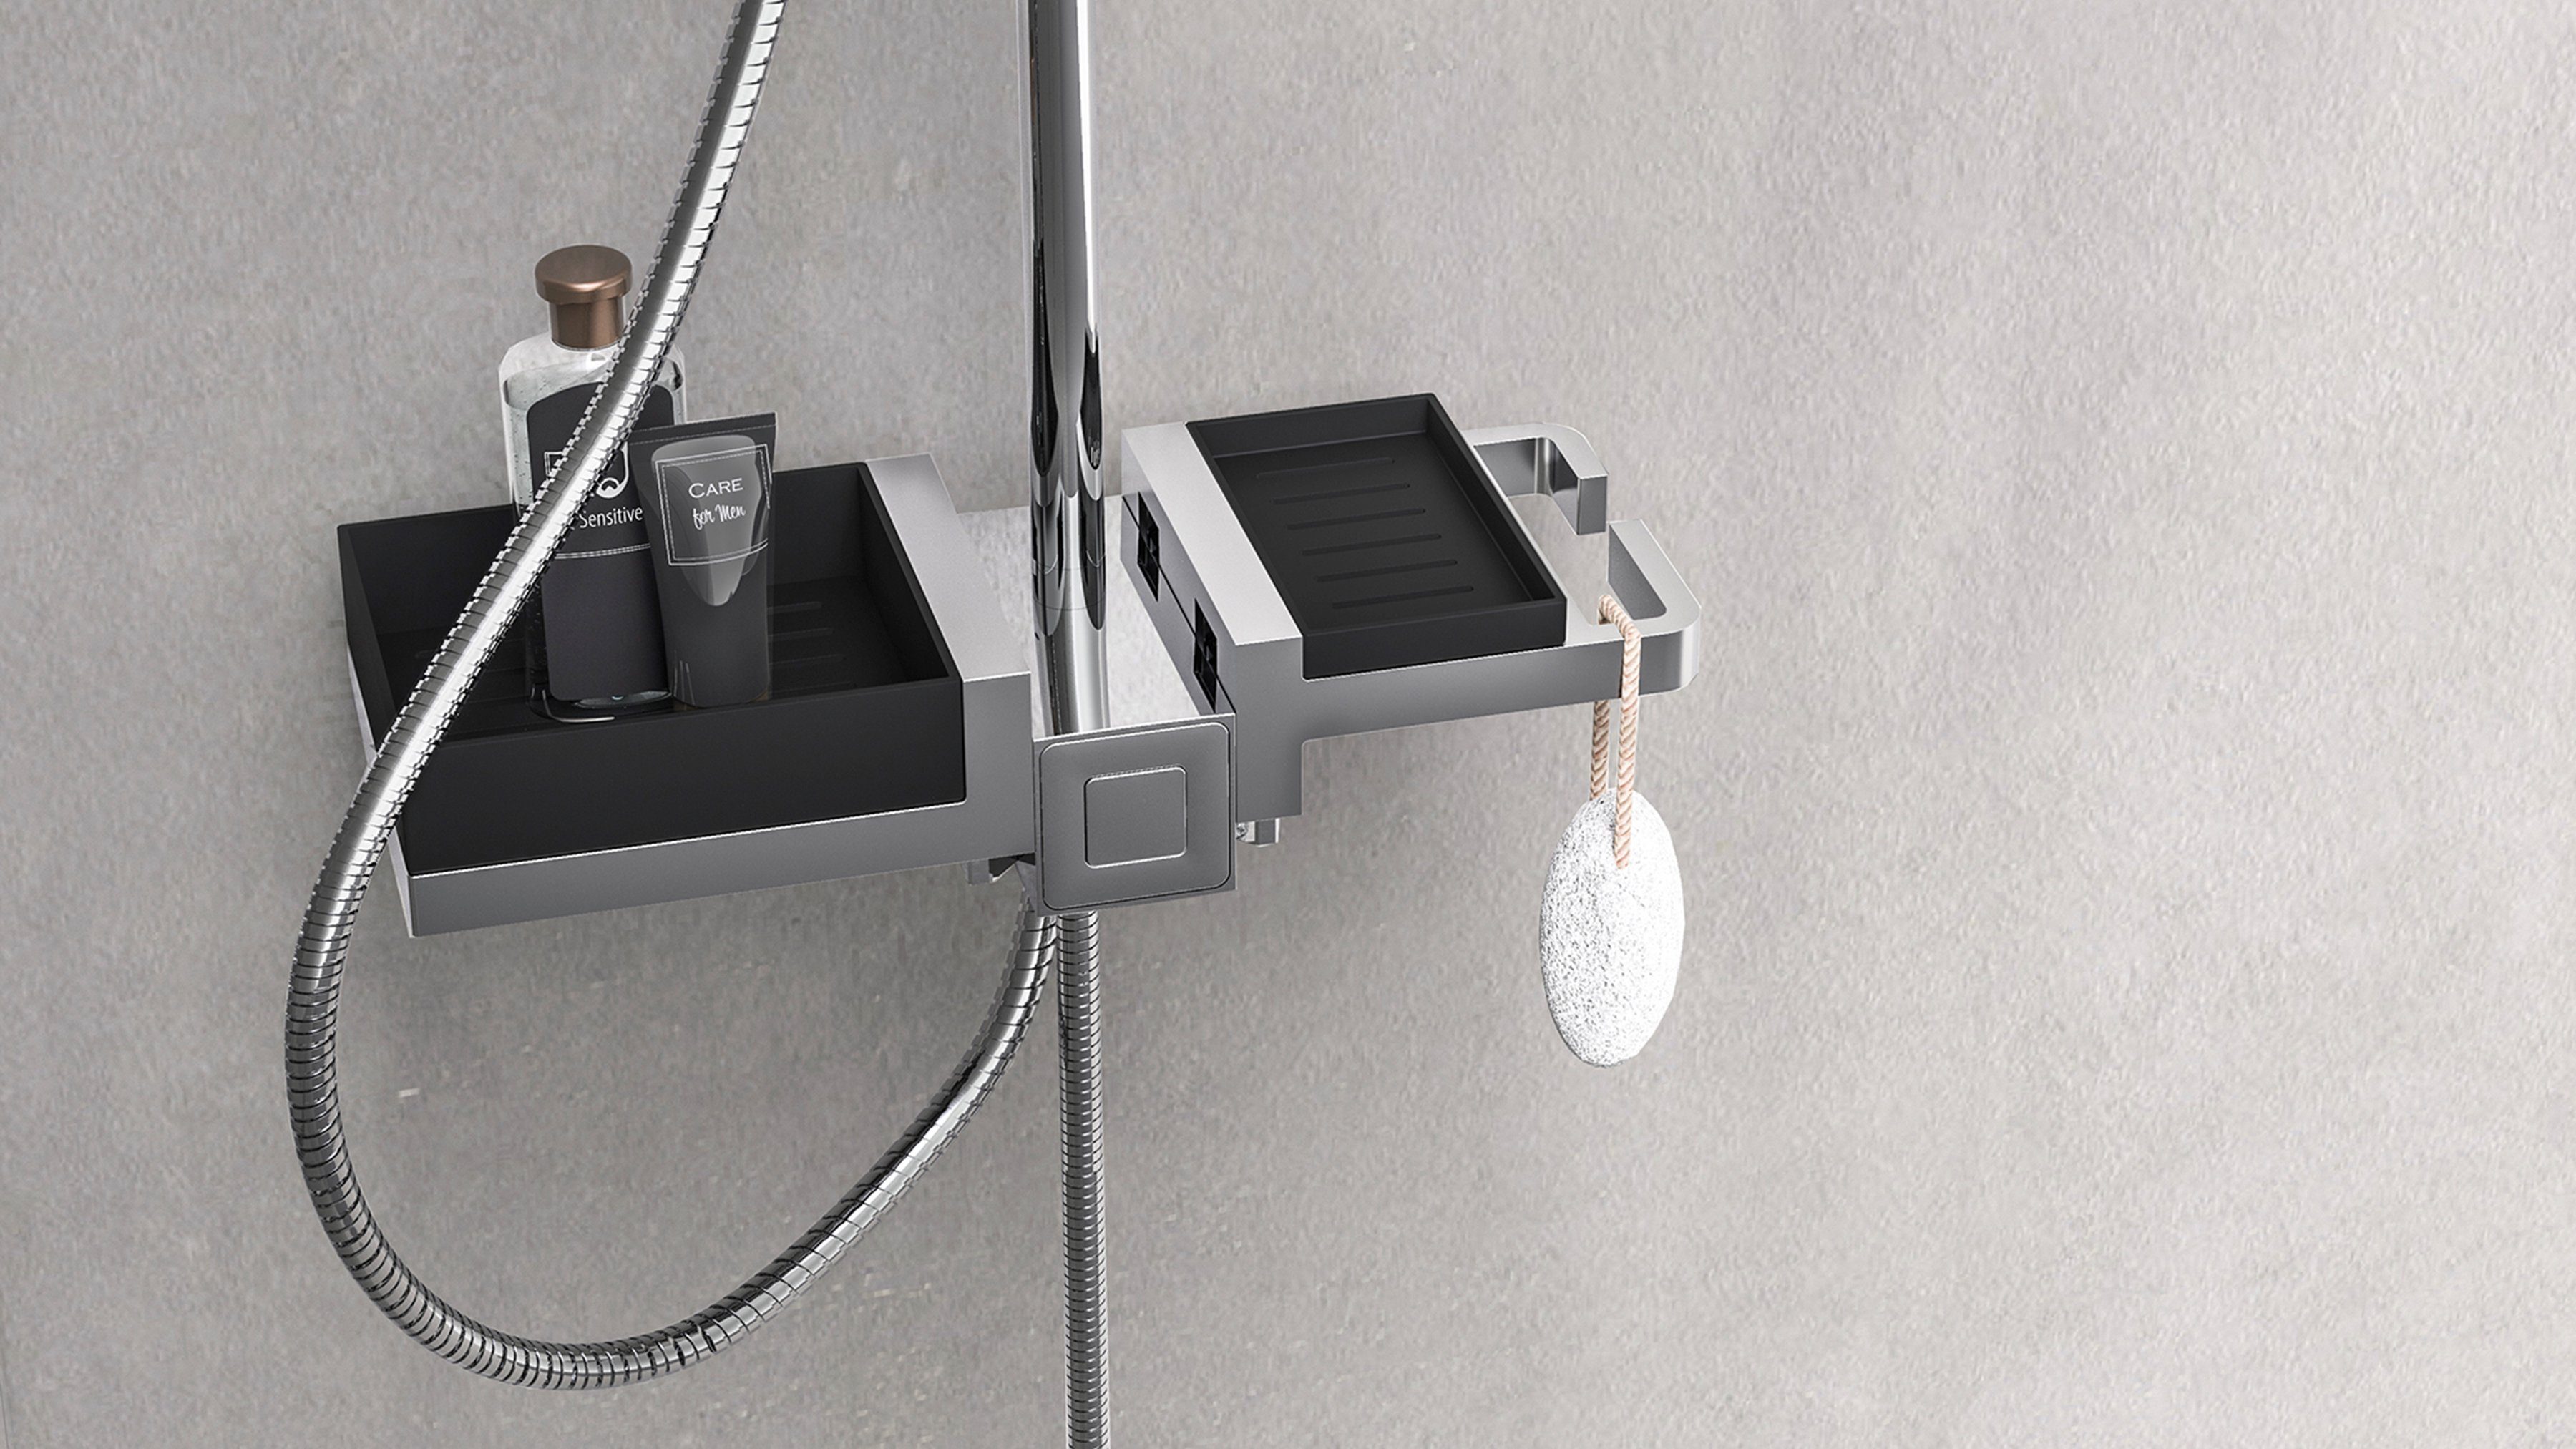 Duschsystem Schütte mit Regendusche modularem Ablagesystem, Duschsystem Duschbrause BLUEPERL, und